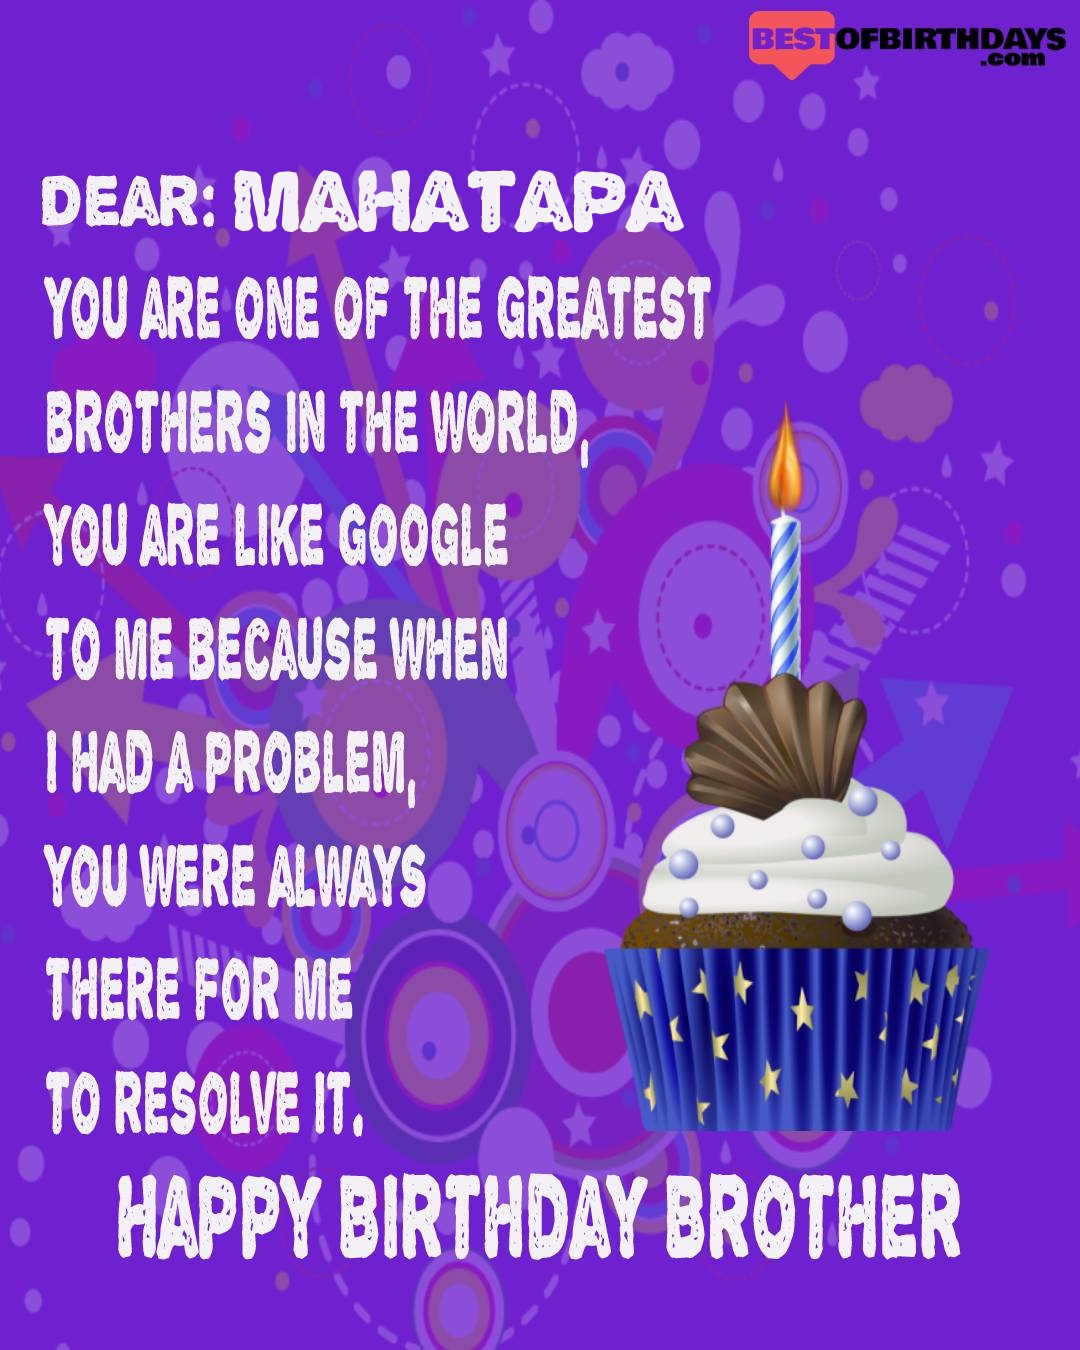 Happy birthday mahatapa bhai brother bro